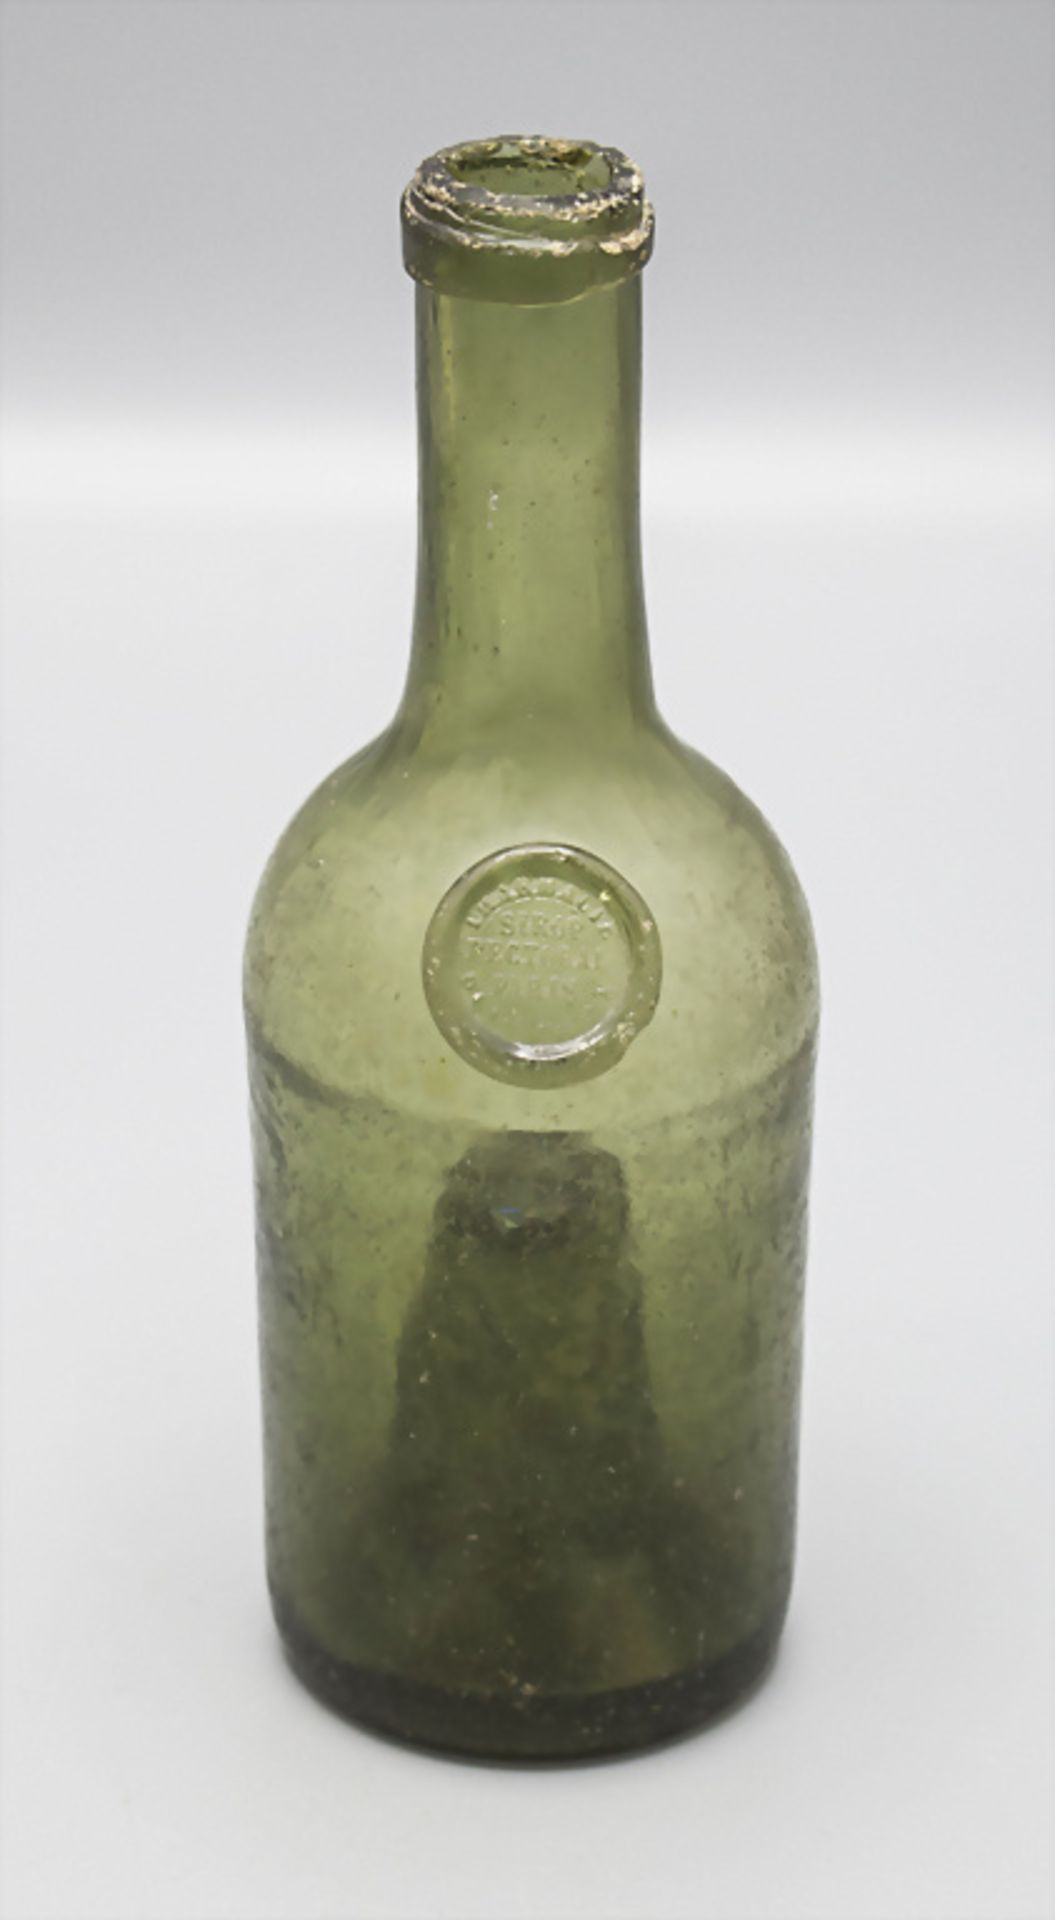 Apothekerflasche mit Siegel, Frankreich, Ende 18. Jh.